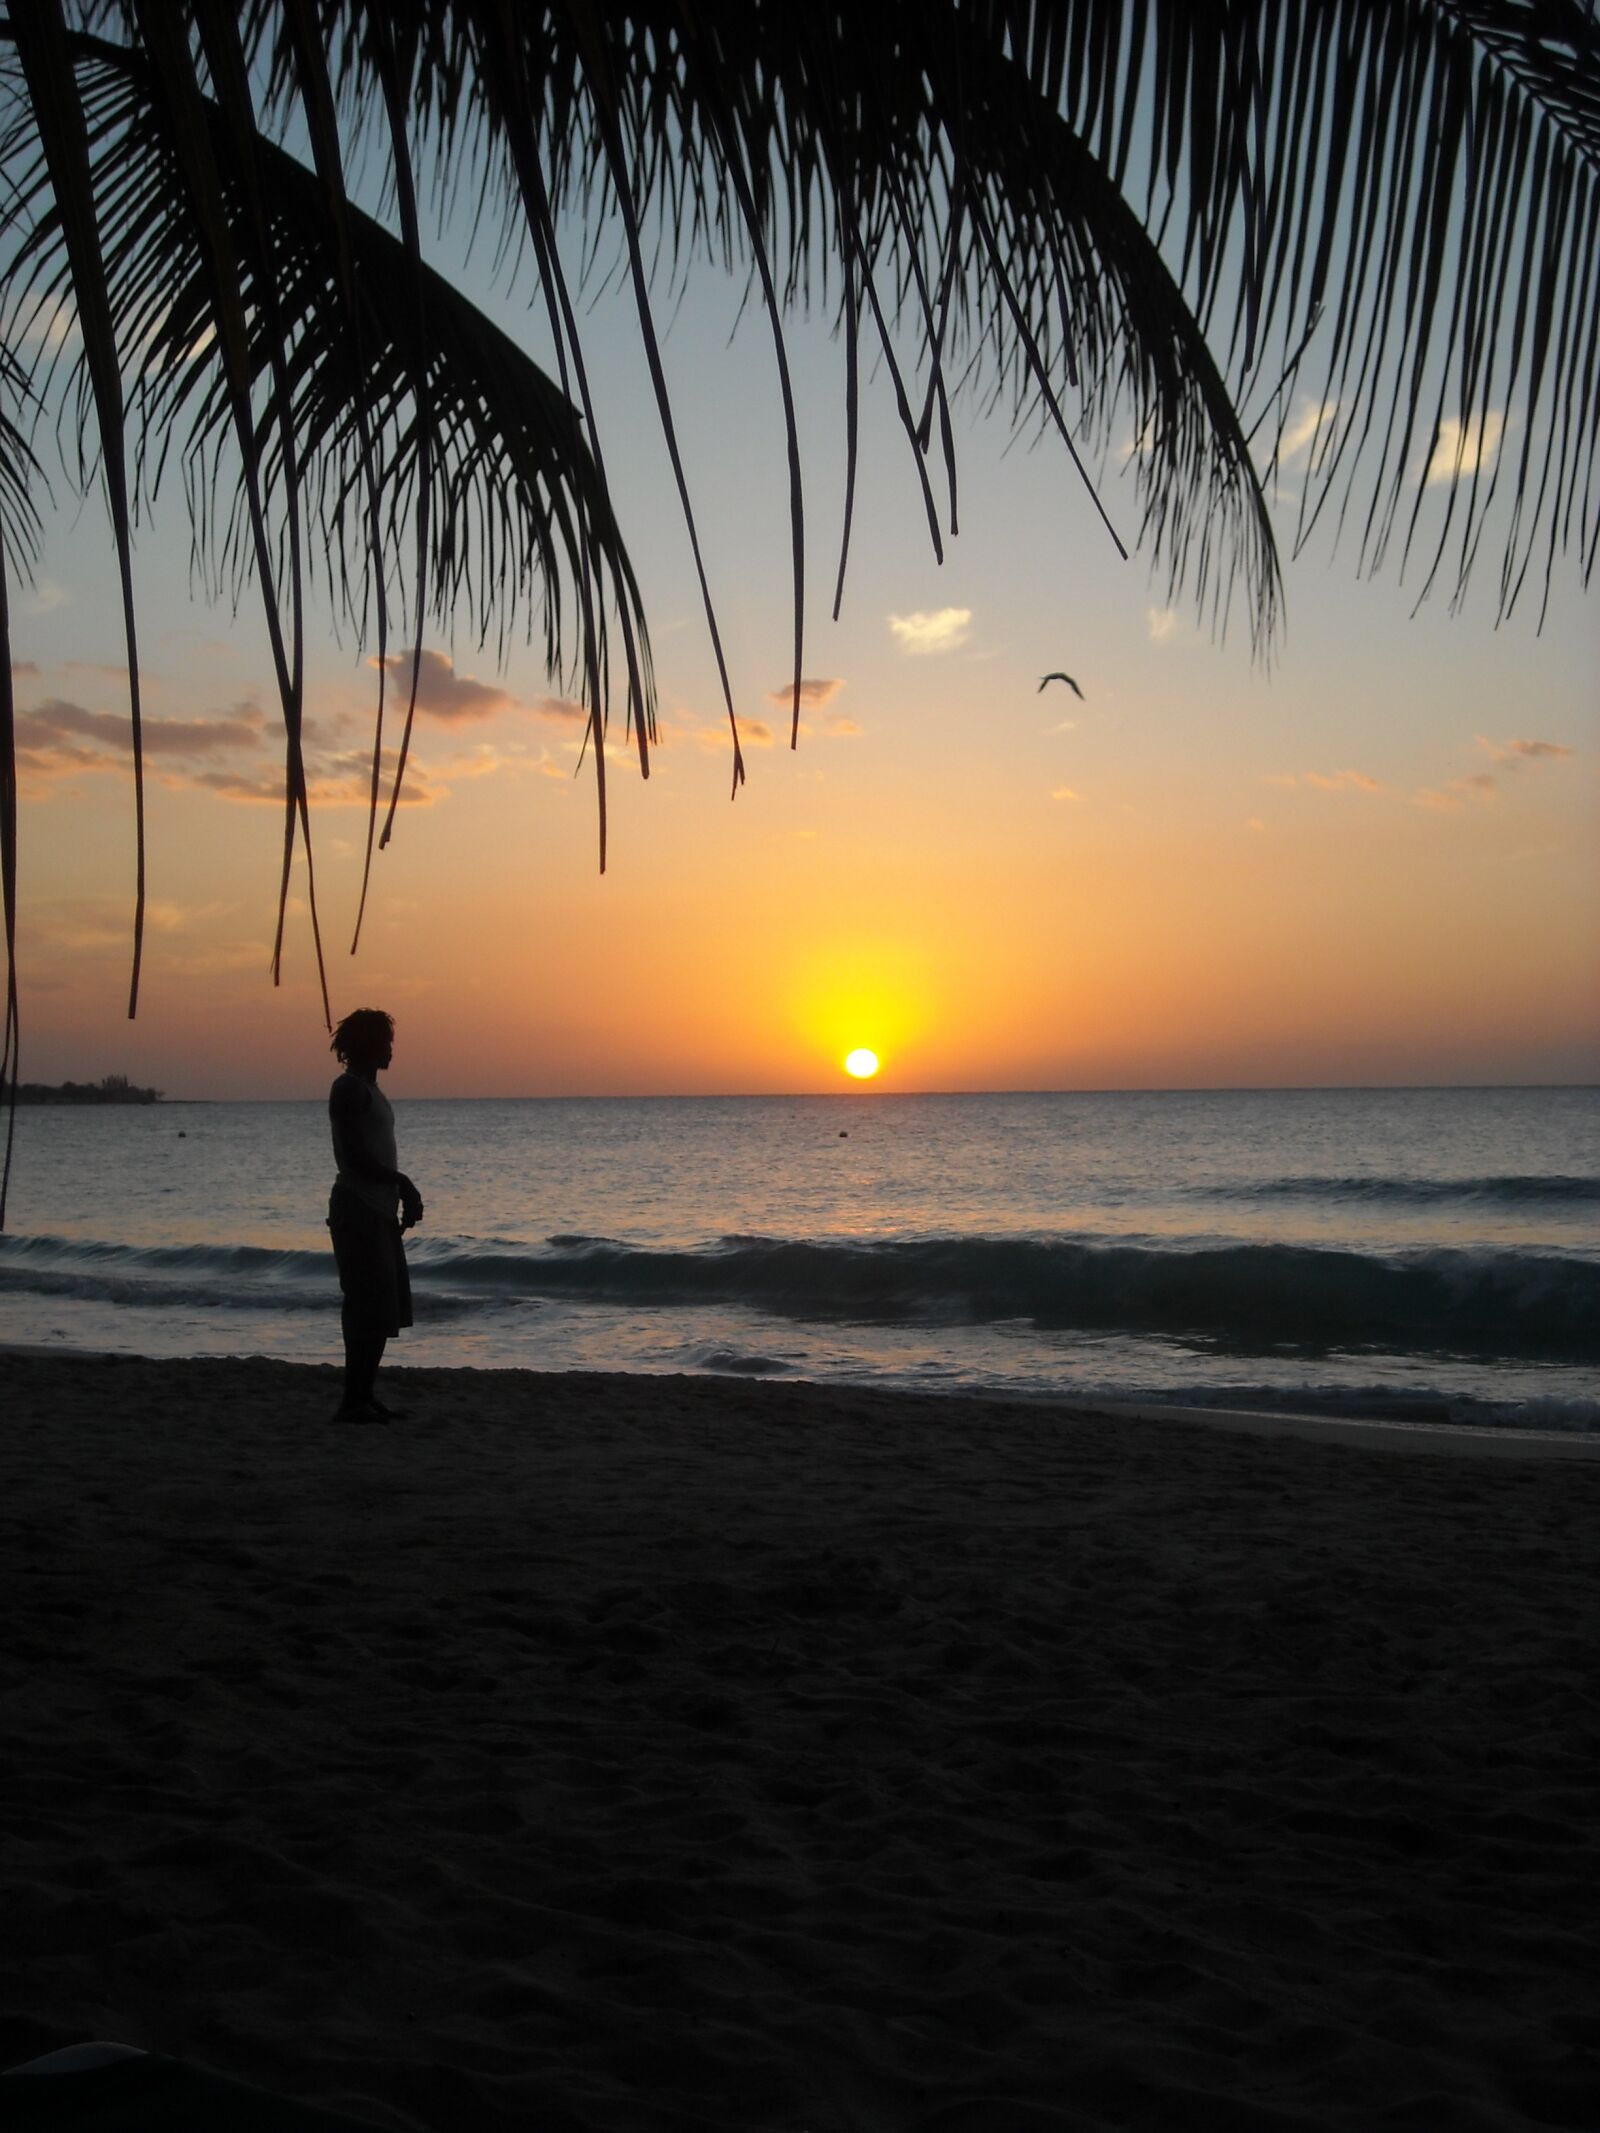 Nikon Coolpix L18 sample photo. Jamaica, sunset, beach photography